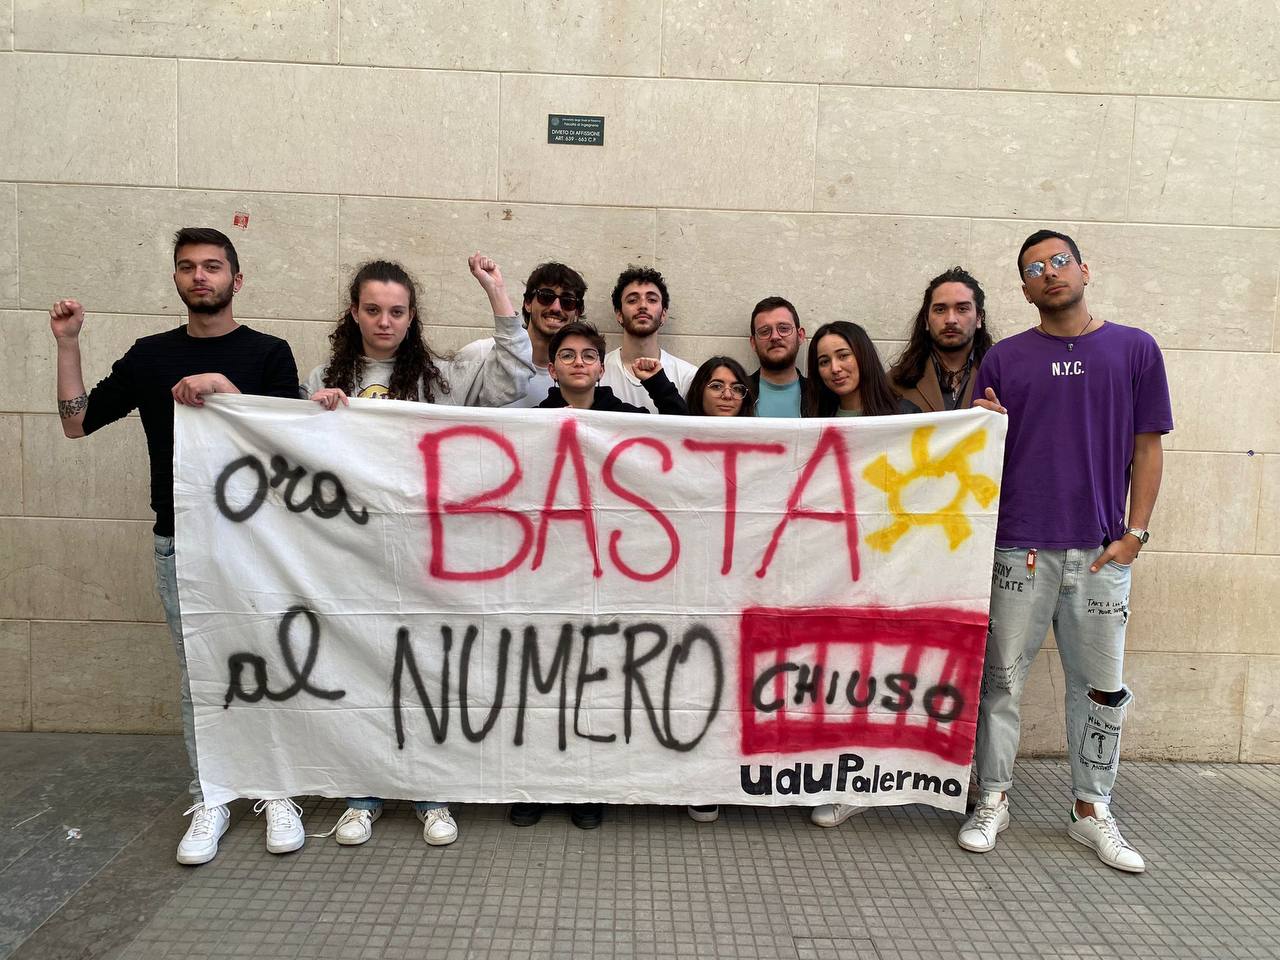 Udu Palermo: “Chiediamo il superamento del numero chiuso per un modello universitario più inclusivo”